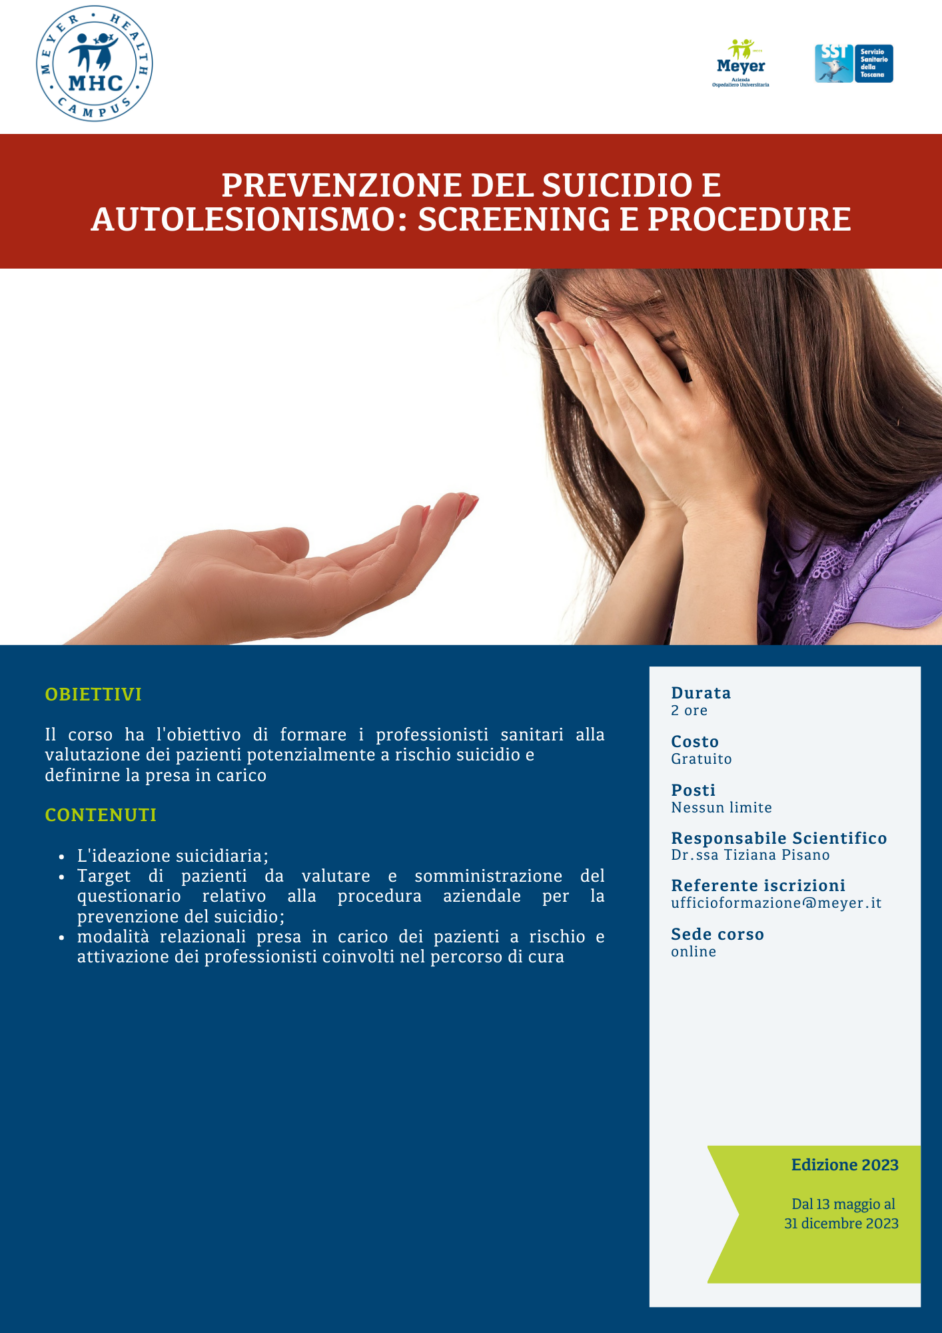 Prevenzione del suicidio e autolesionismo: screening e protocolli di sicurezza (13 maggio-31 dicembre 2023)